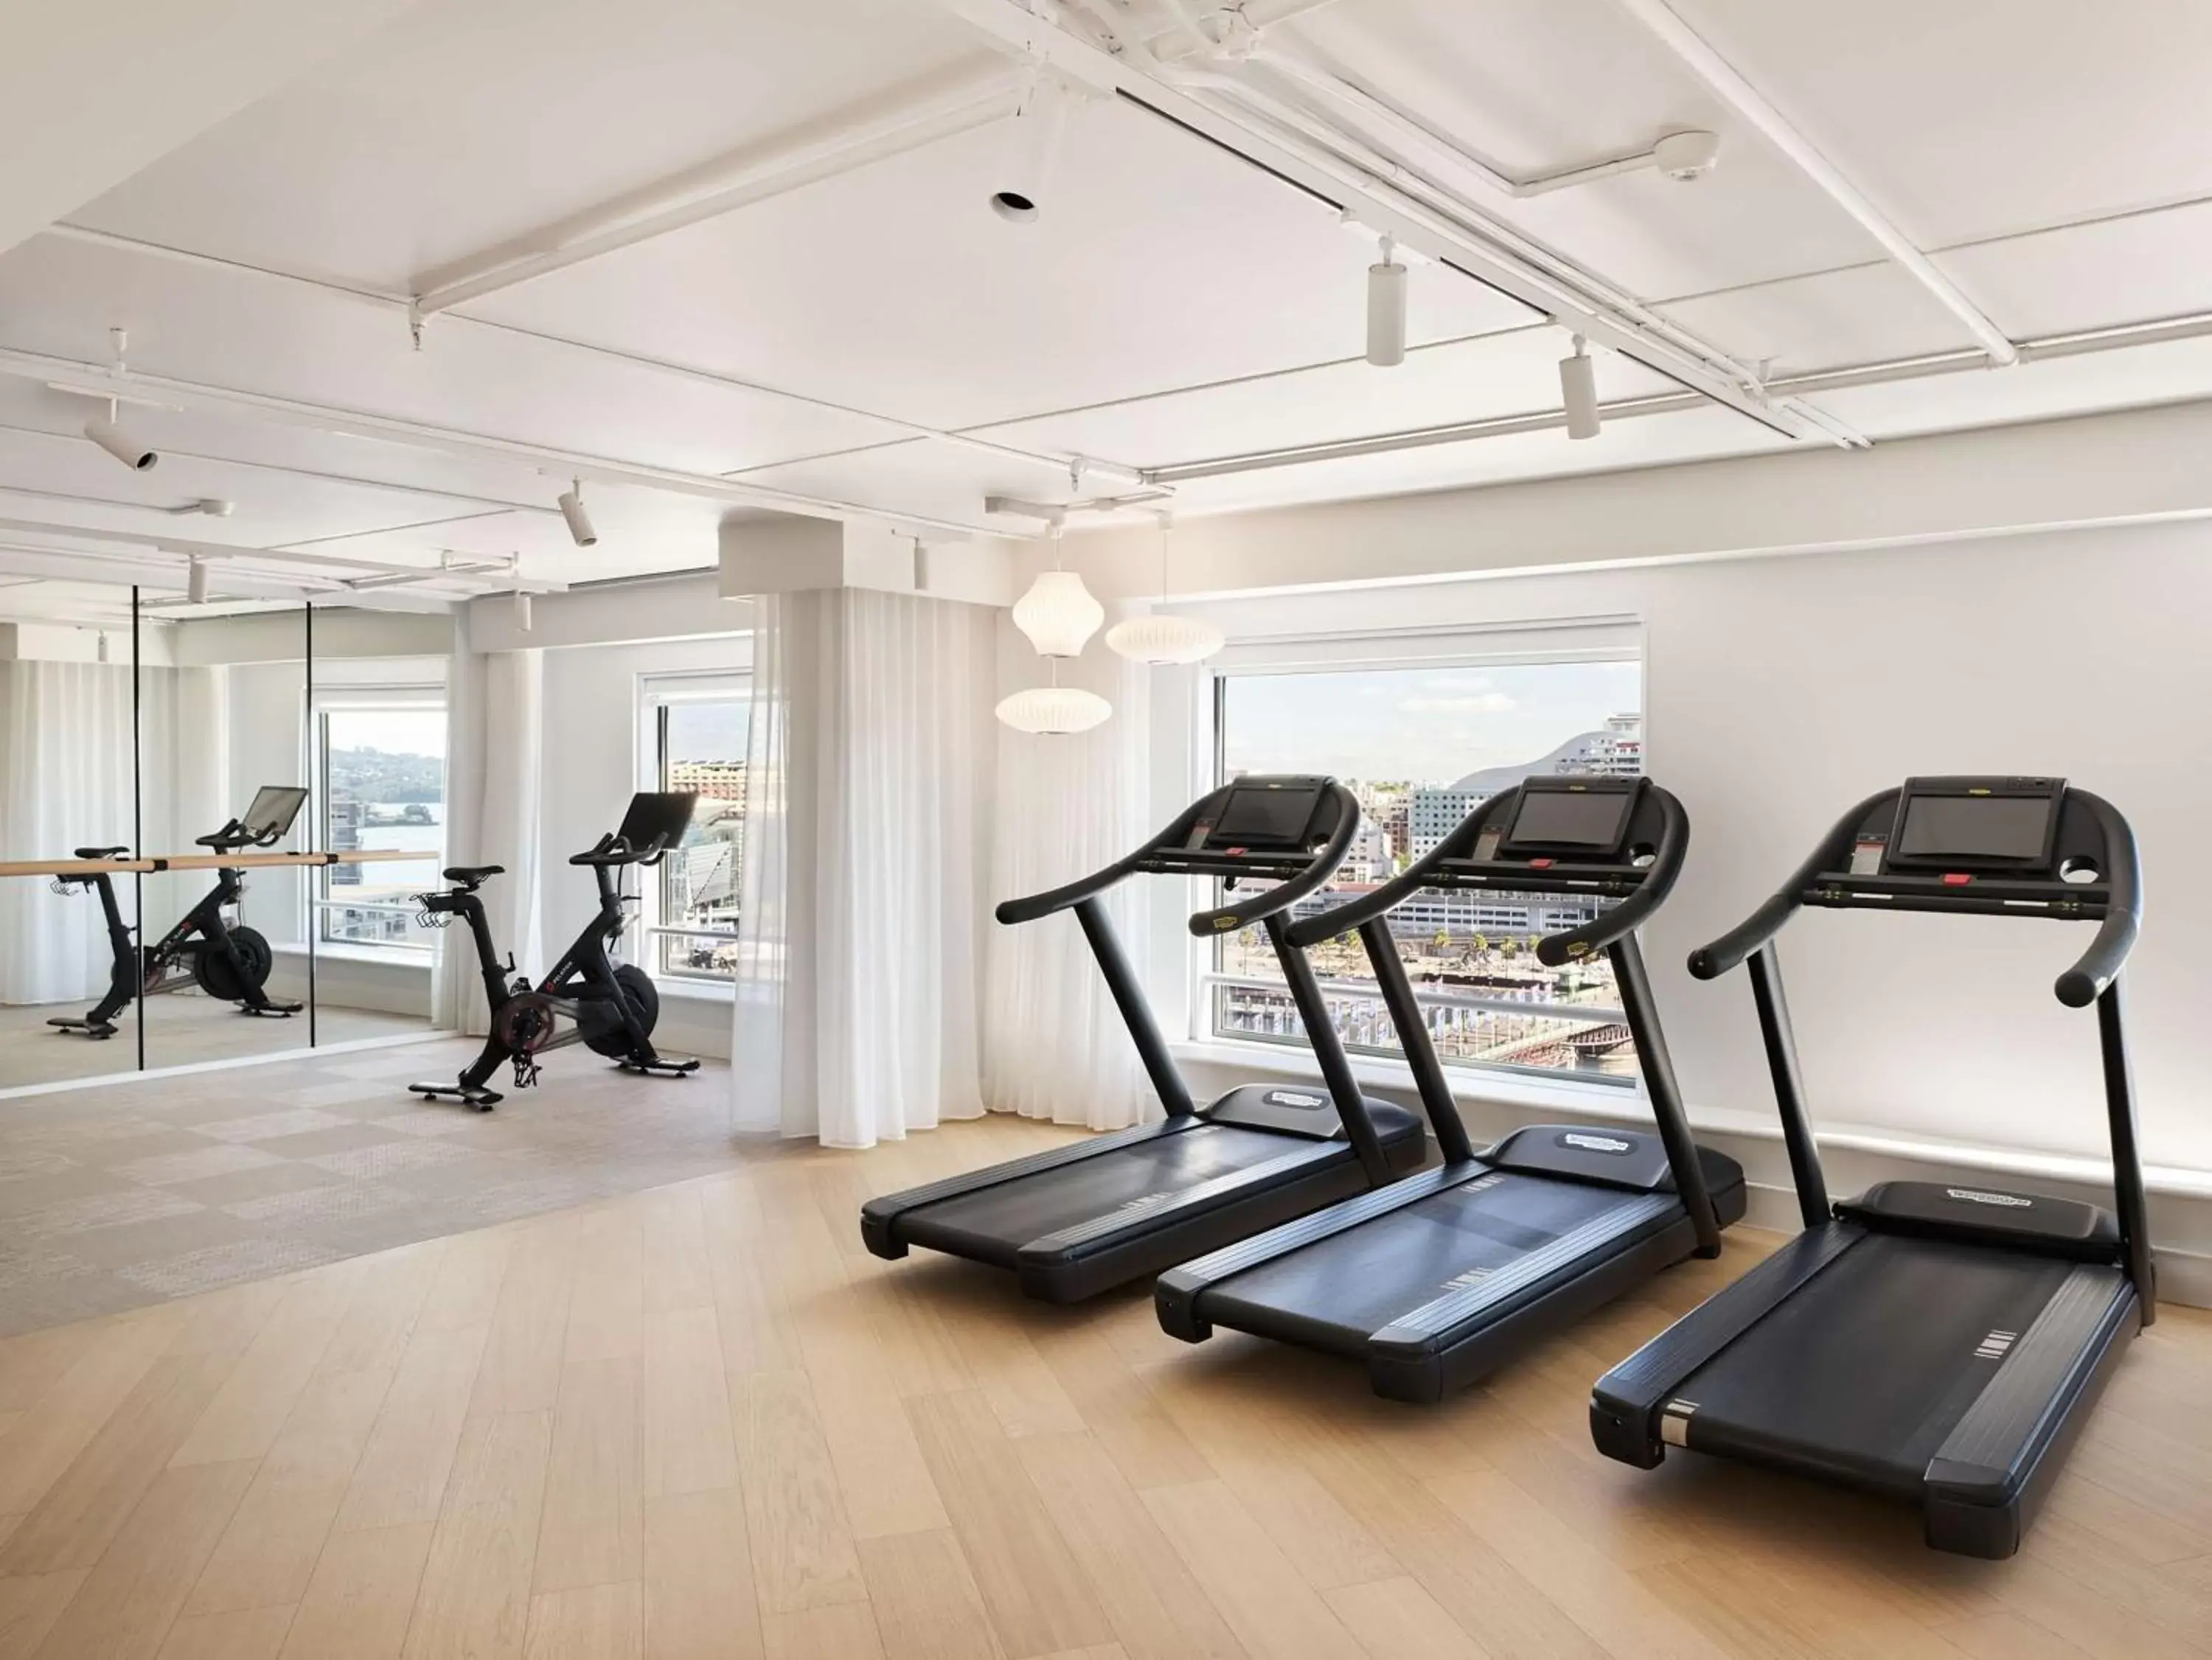 Fitness centre/facilities, Fitness Center/Facilities in Hyatt Regency Sydney